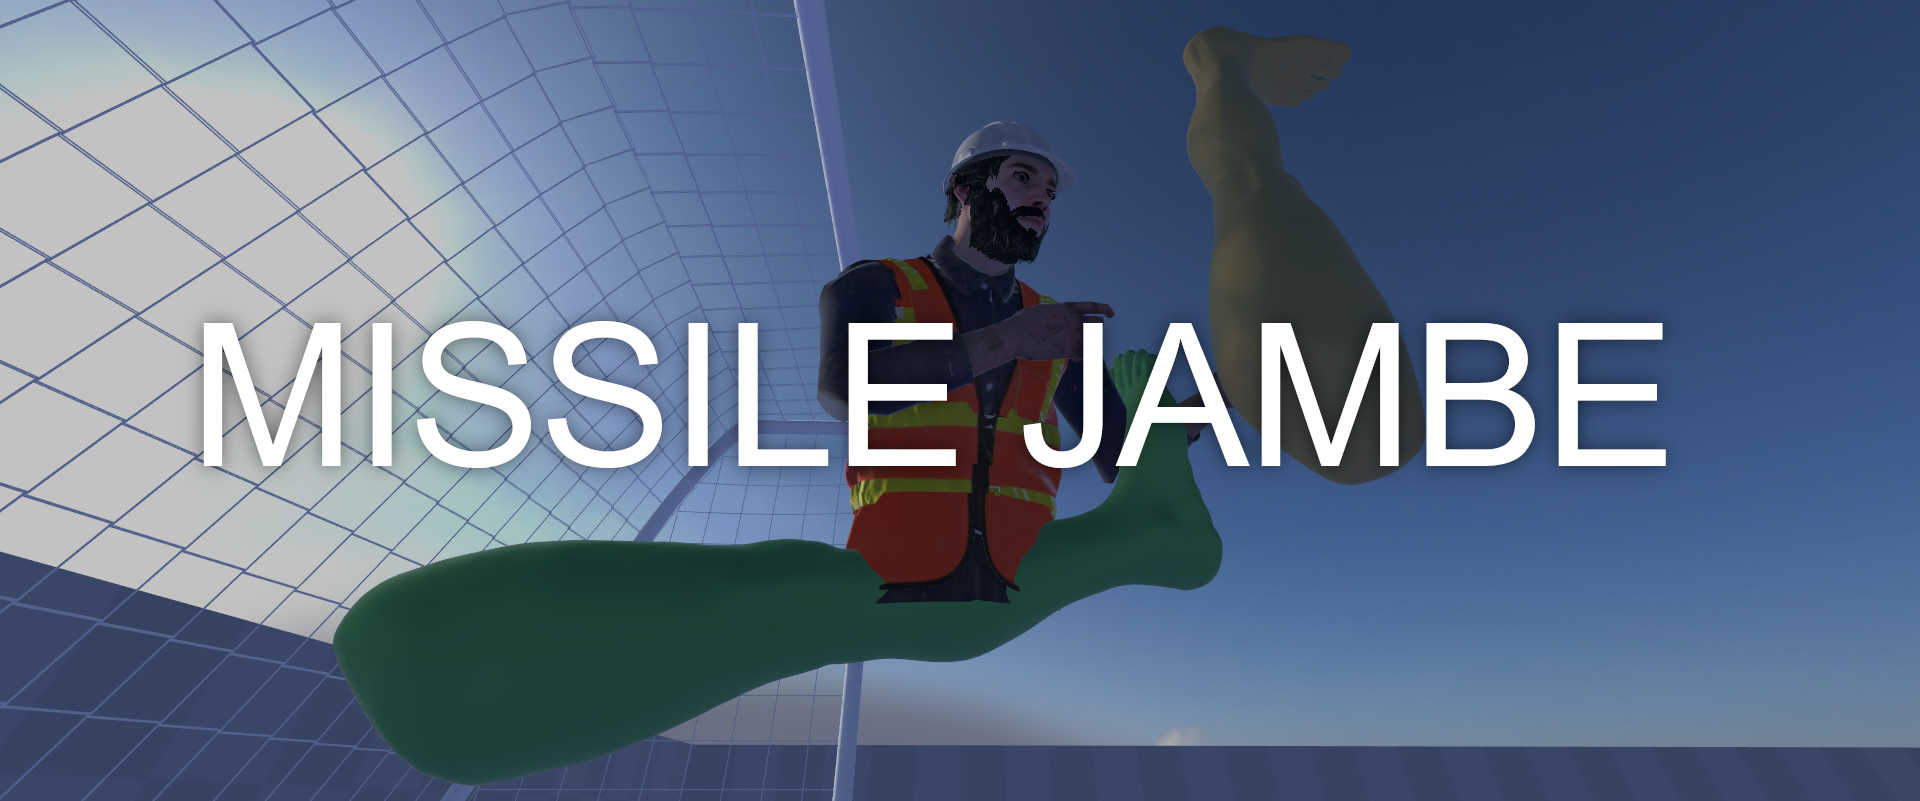 Missile Jambe